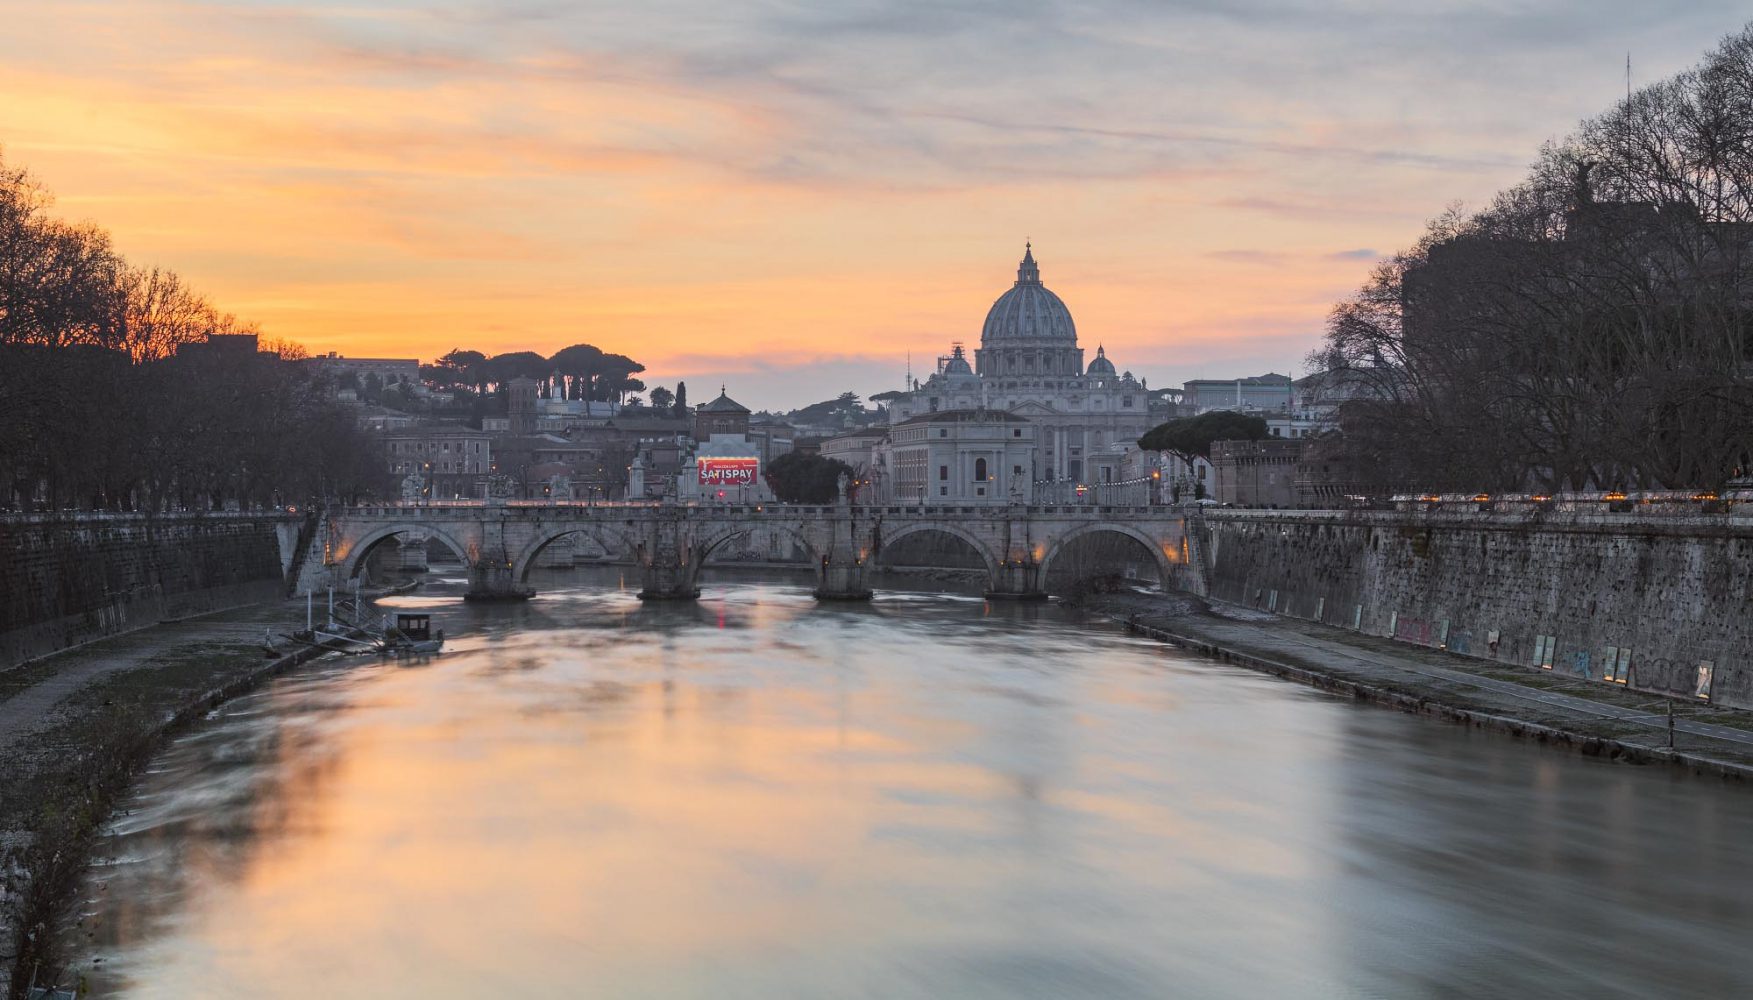 Basilica di Santa Maria Maggiore Rome Italy sunset